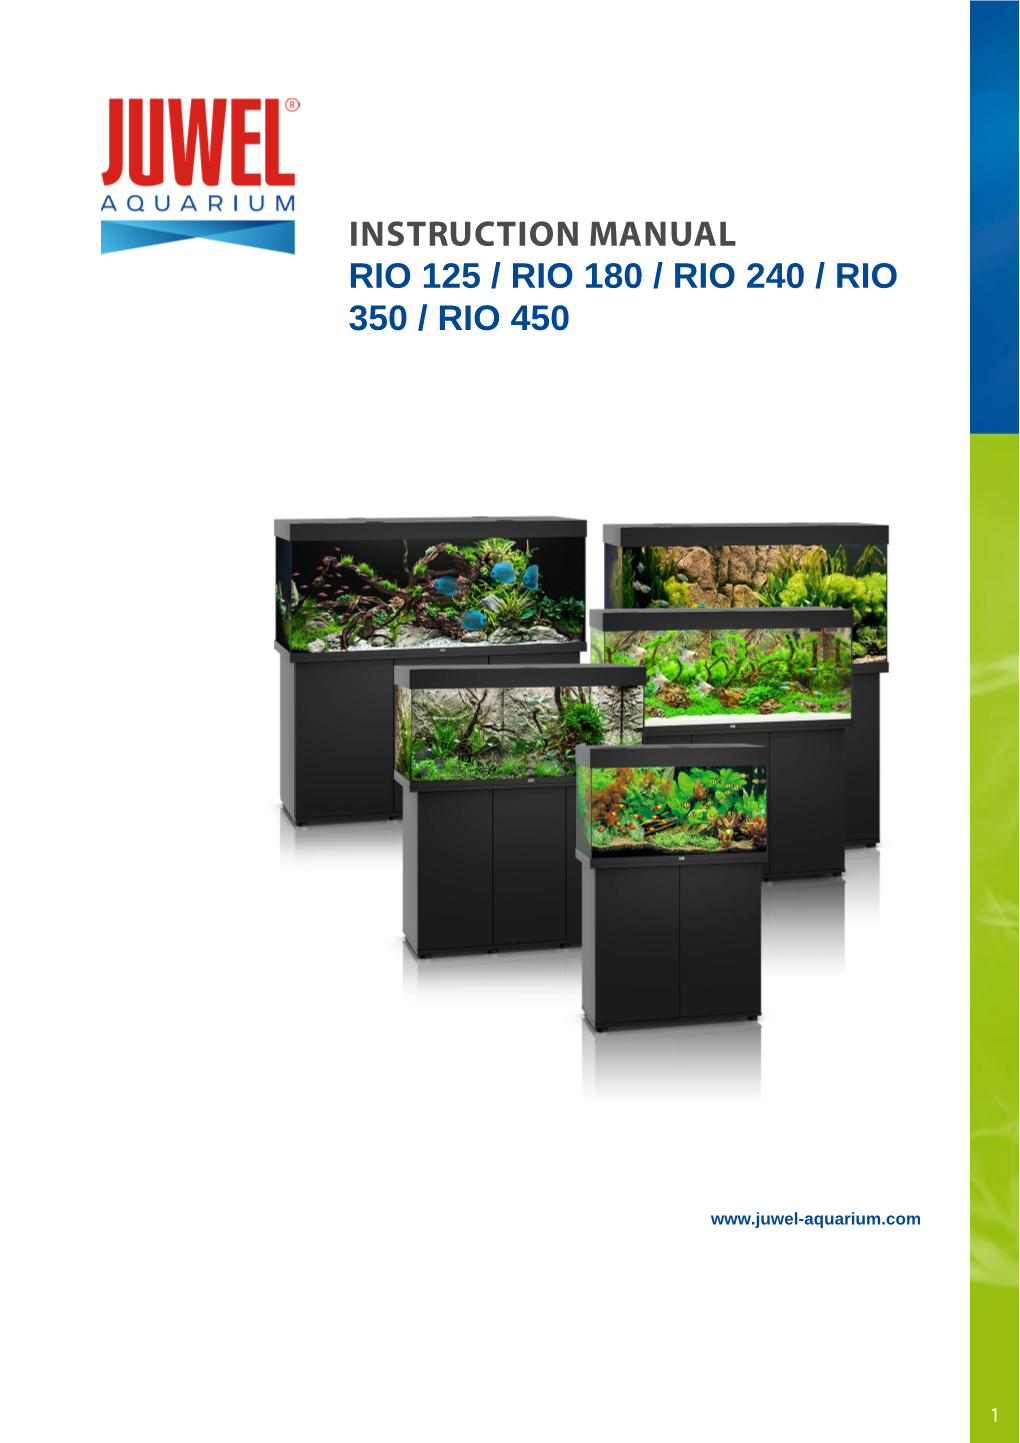 Instruction Manual Rio 125 / Rio 180 / Rio 240 / Rio 350 / Rio 450